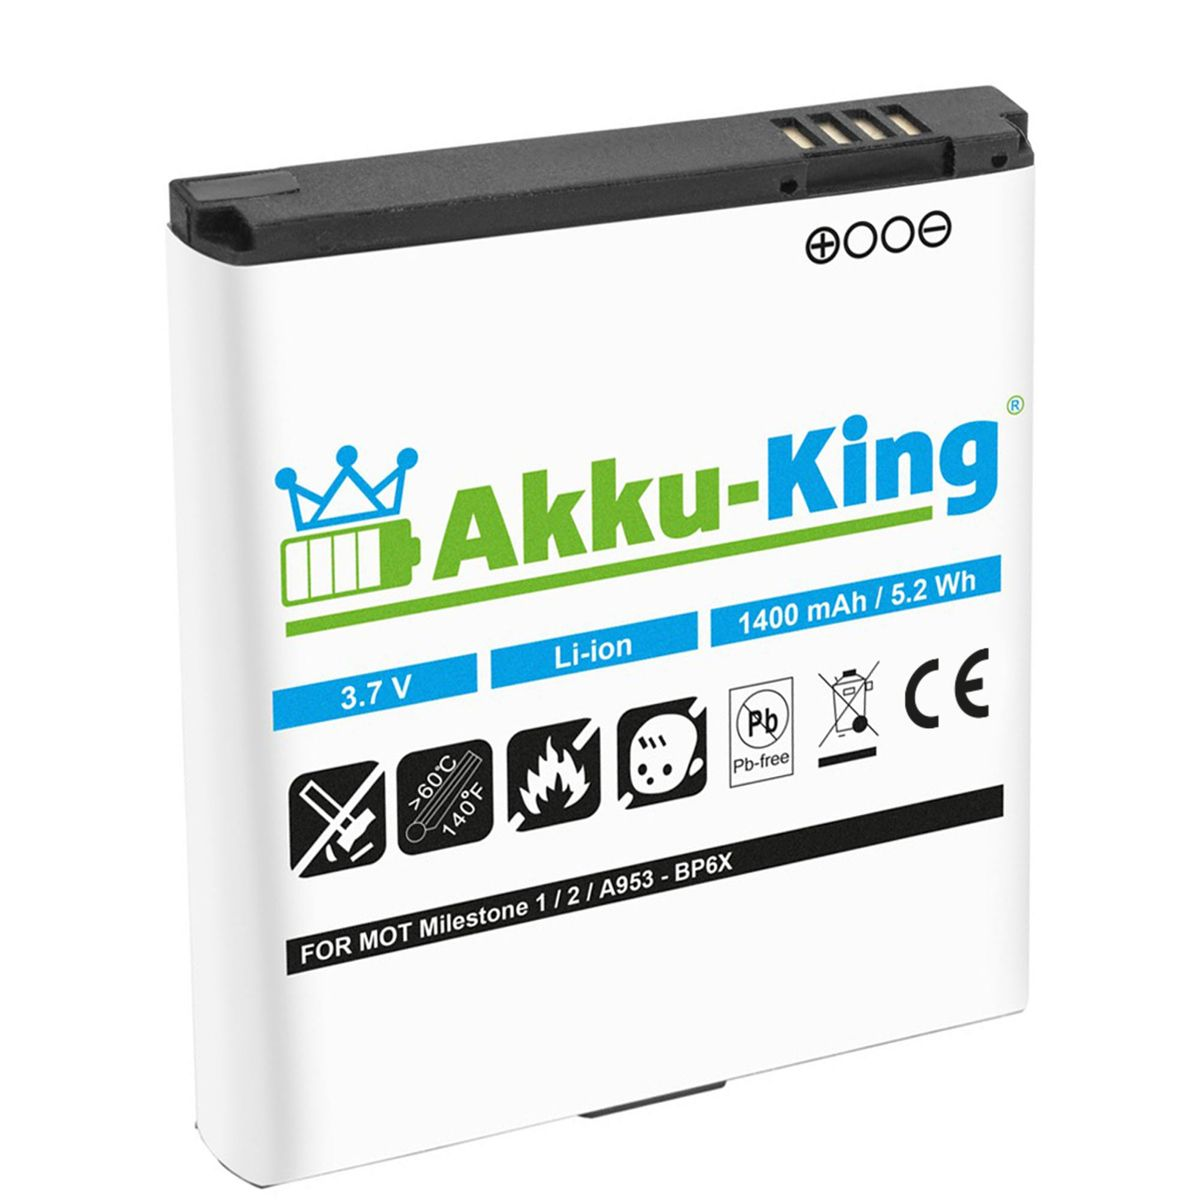 AKKU-KING Akku kompatibel mit Volt, BP6X Handy-Akku, 1400mAh Motorola Li-Ion 3.7